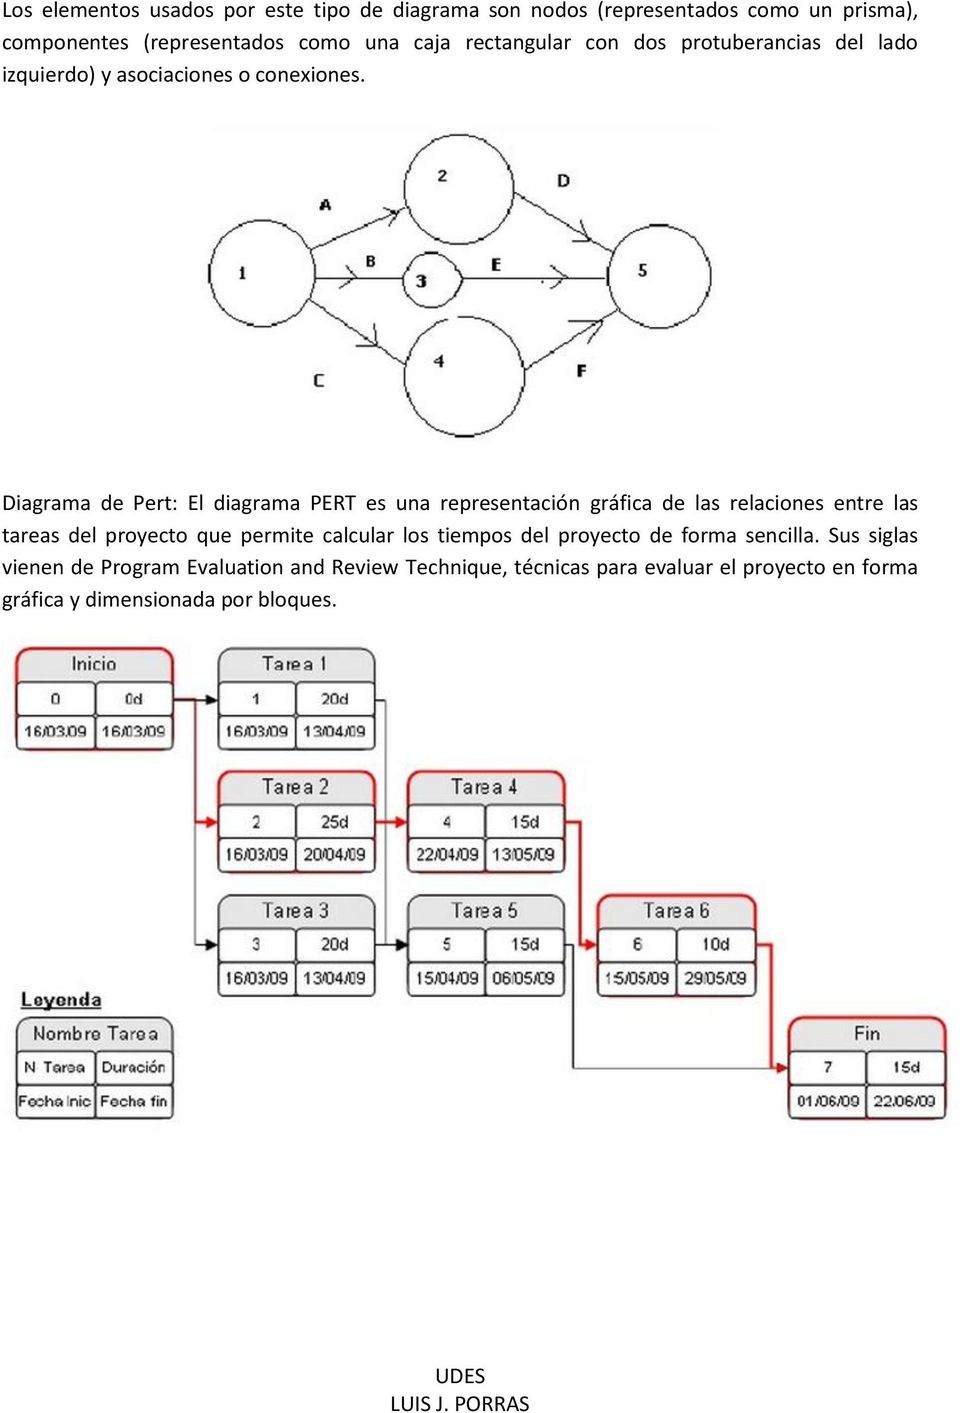 Diagrama de Pert: El diagrama PERT es una representación gráfica de las relaciones entre las tareas del proyecto que permite